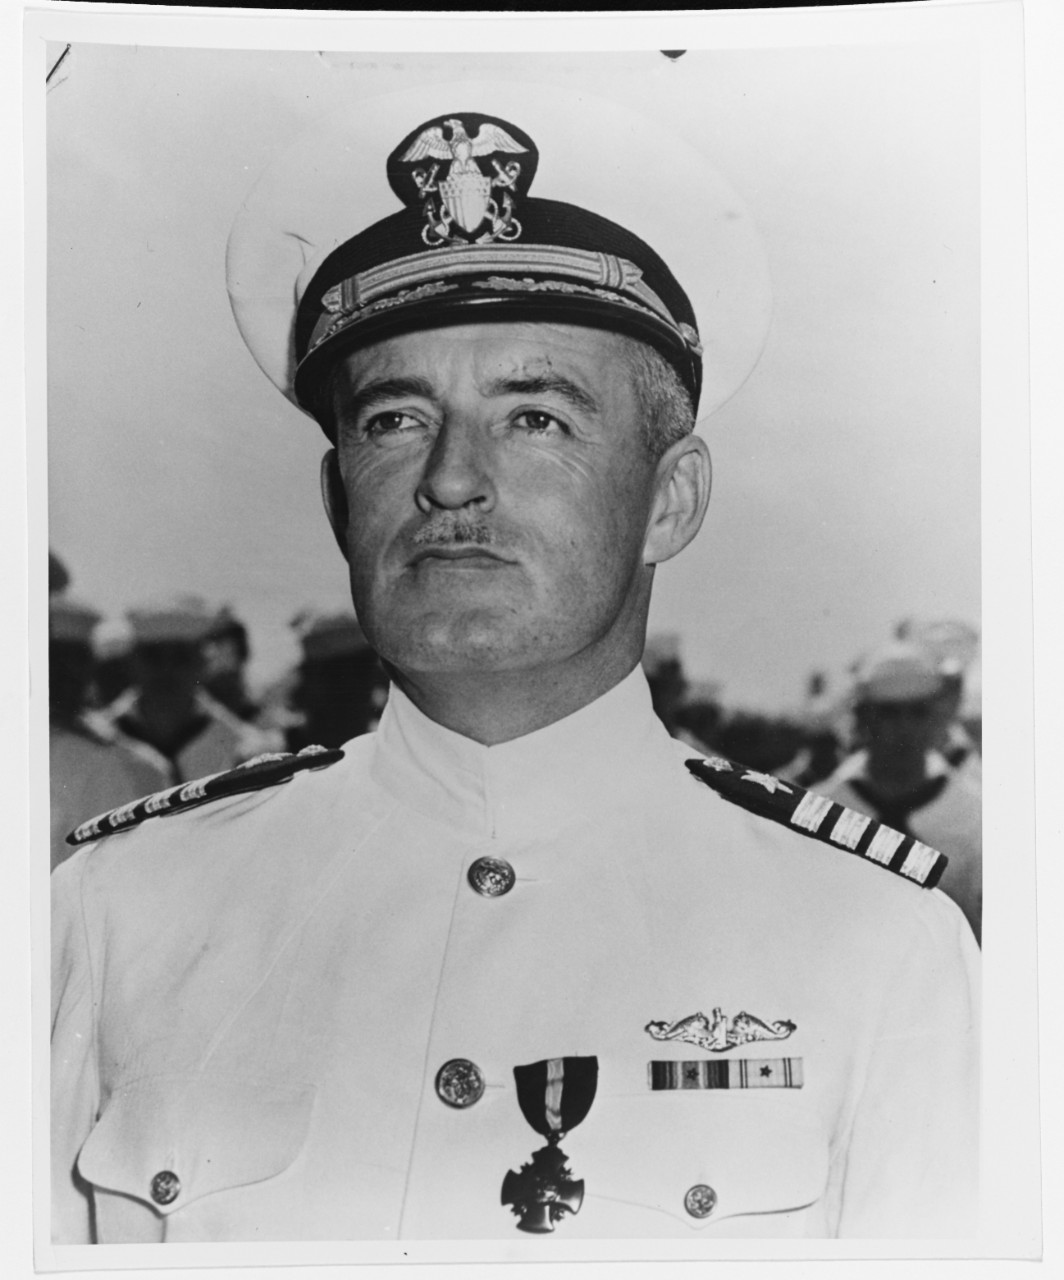 Captain John M. Haines, USN